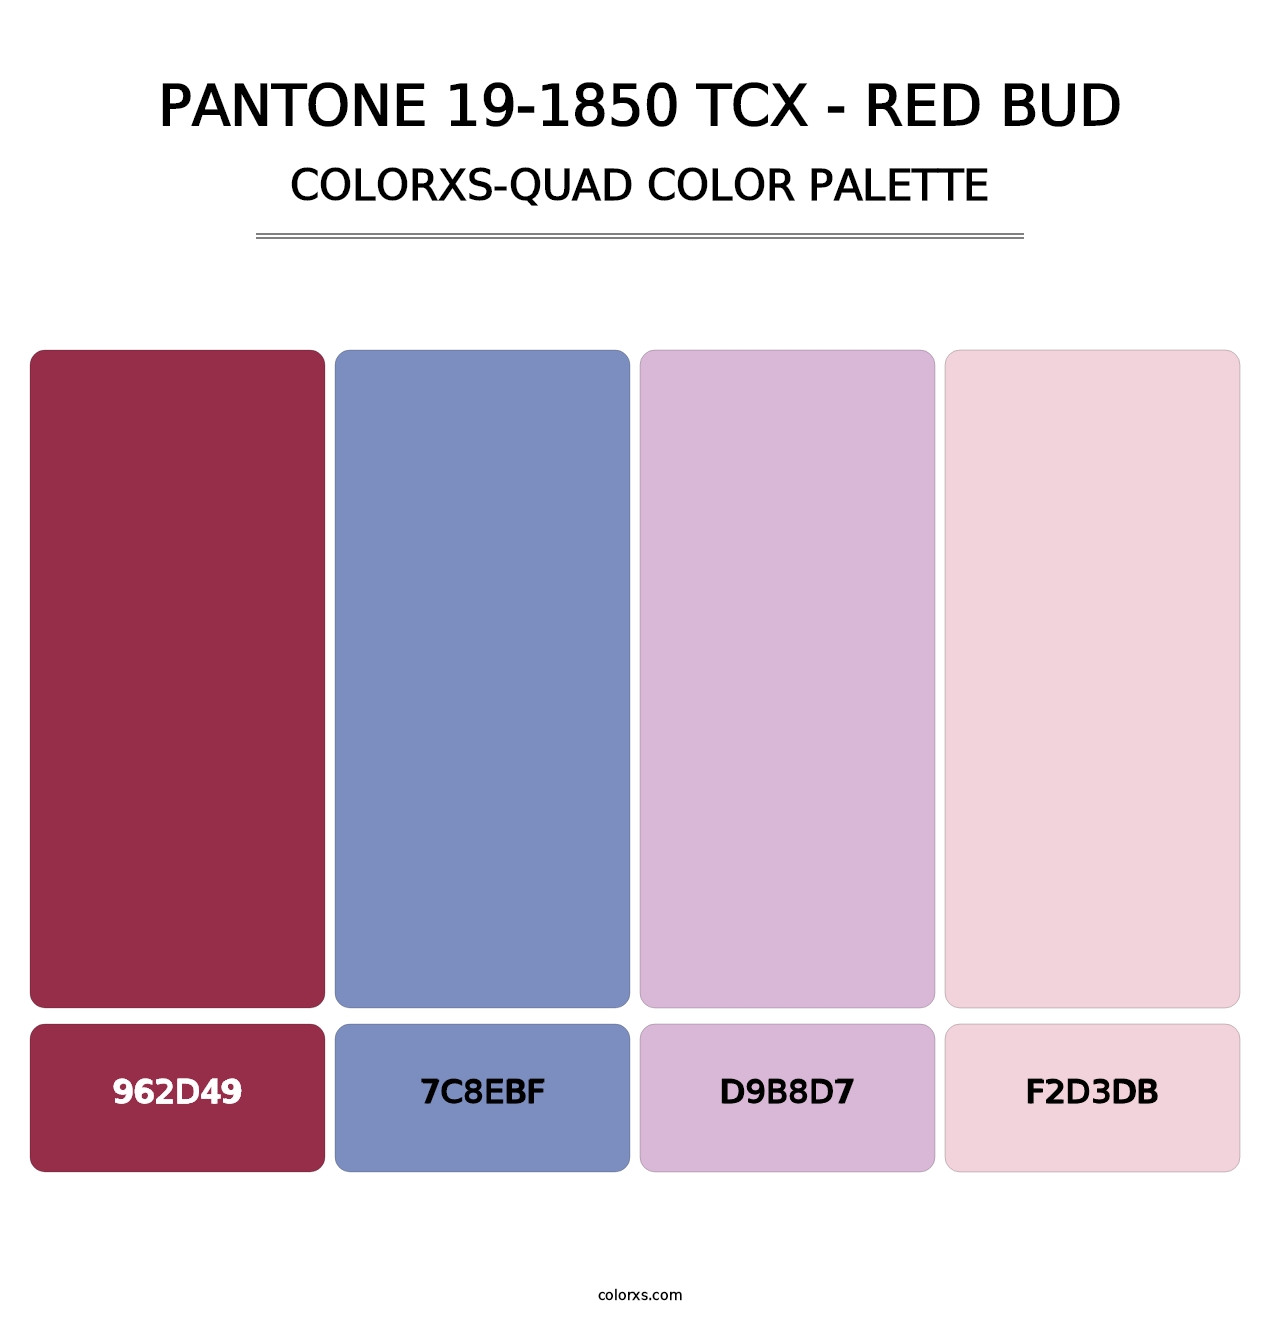 PANTONE 19-1850 TCX - Red Bud - Colorxs Quad Palette